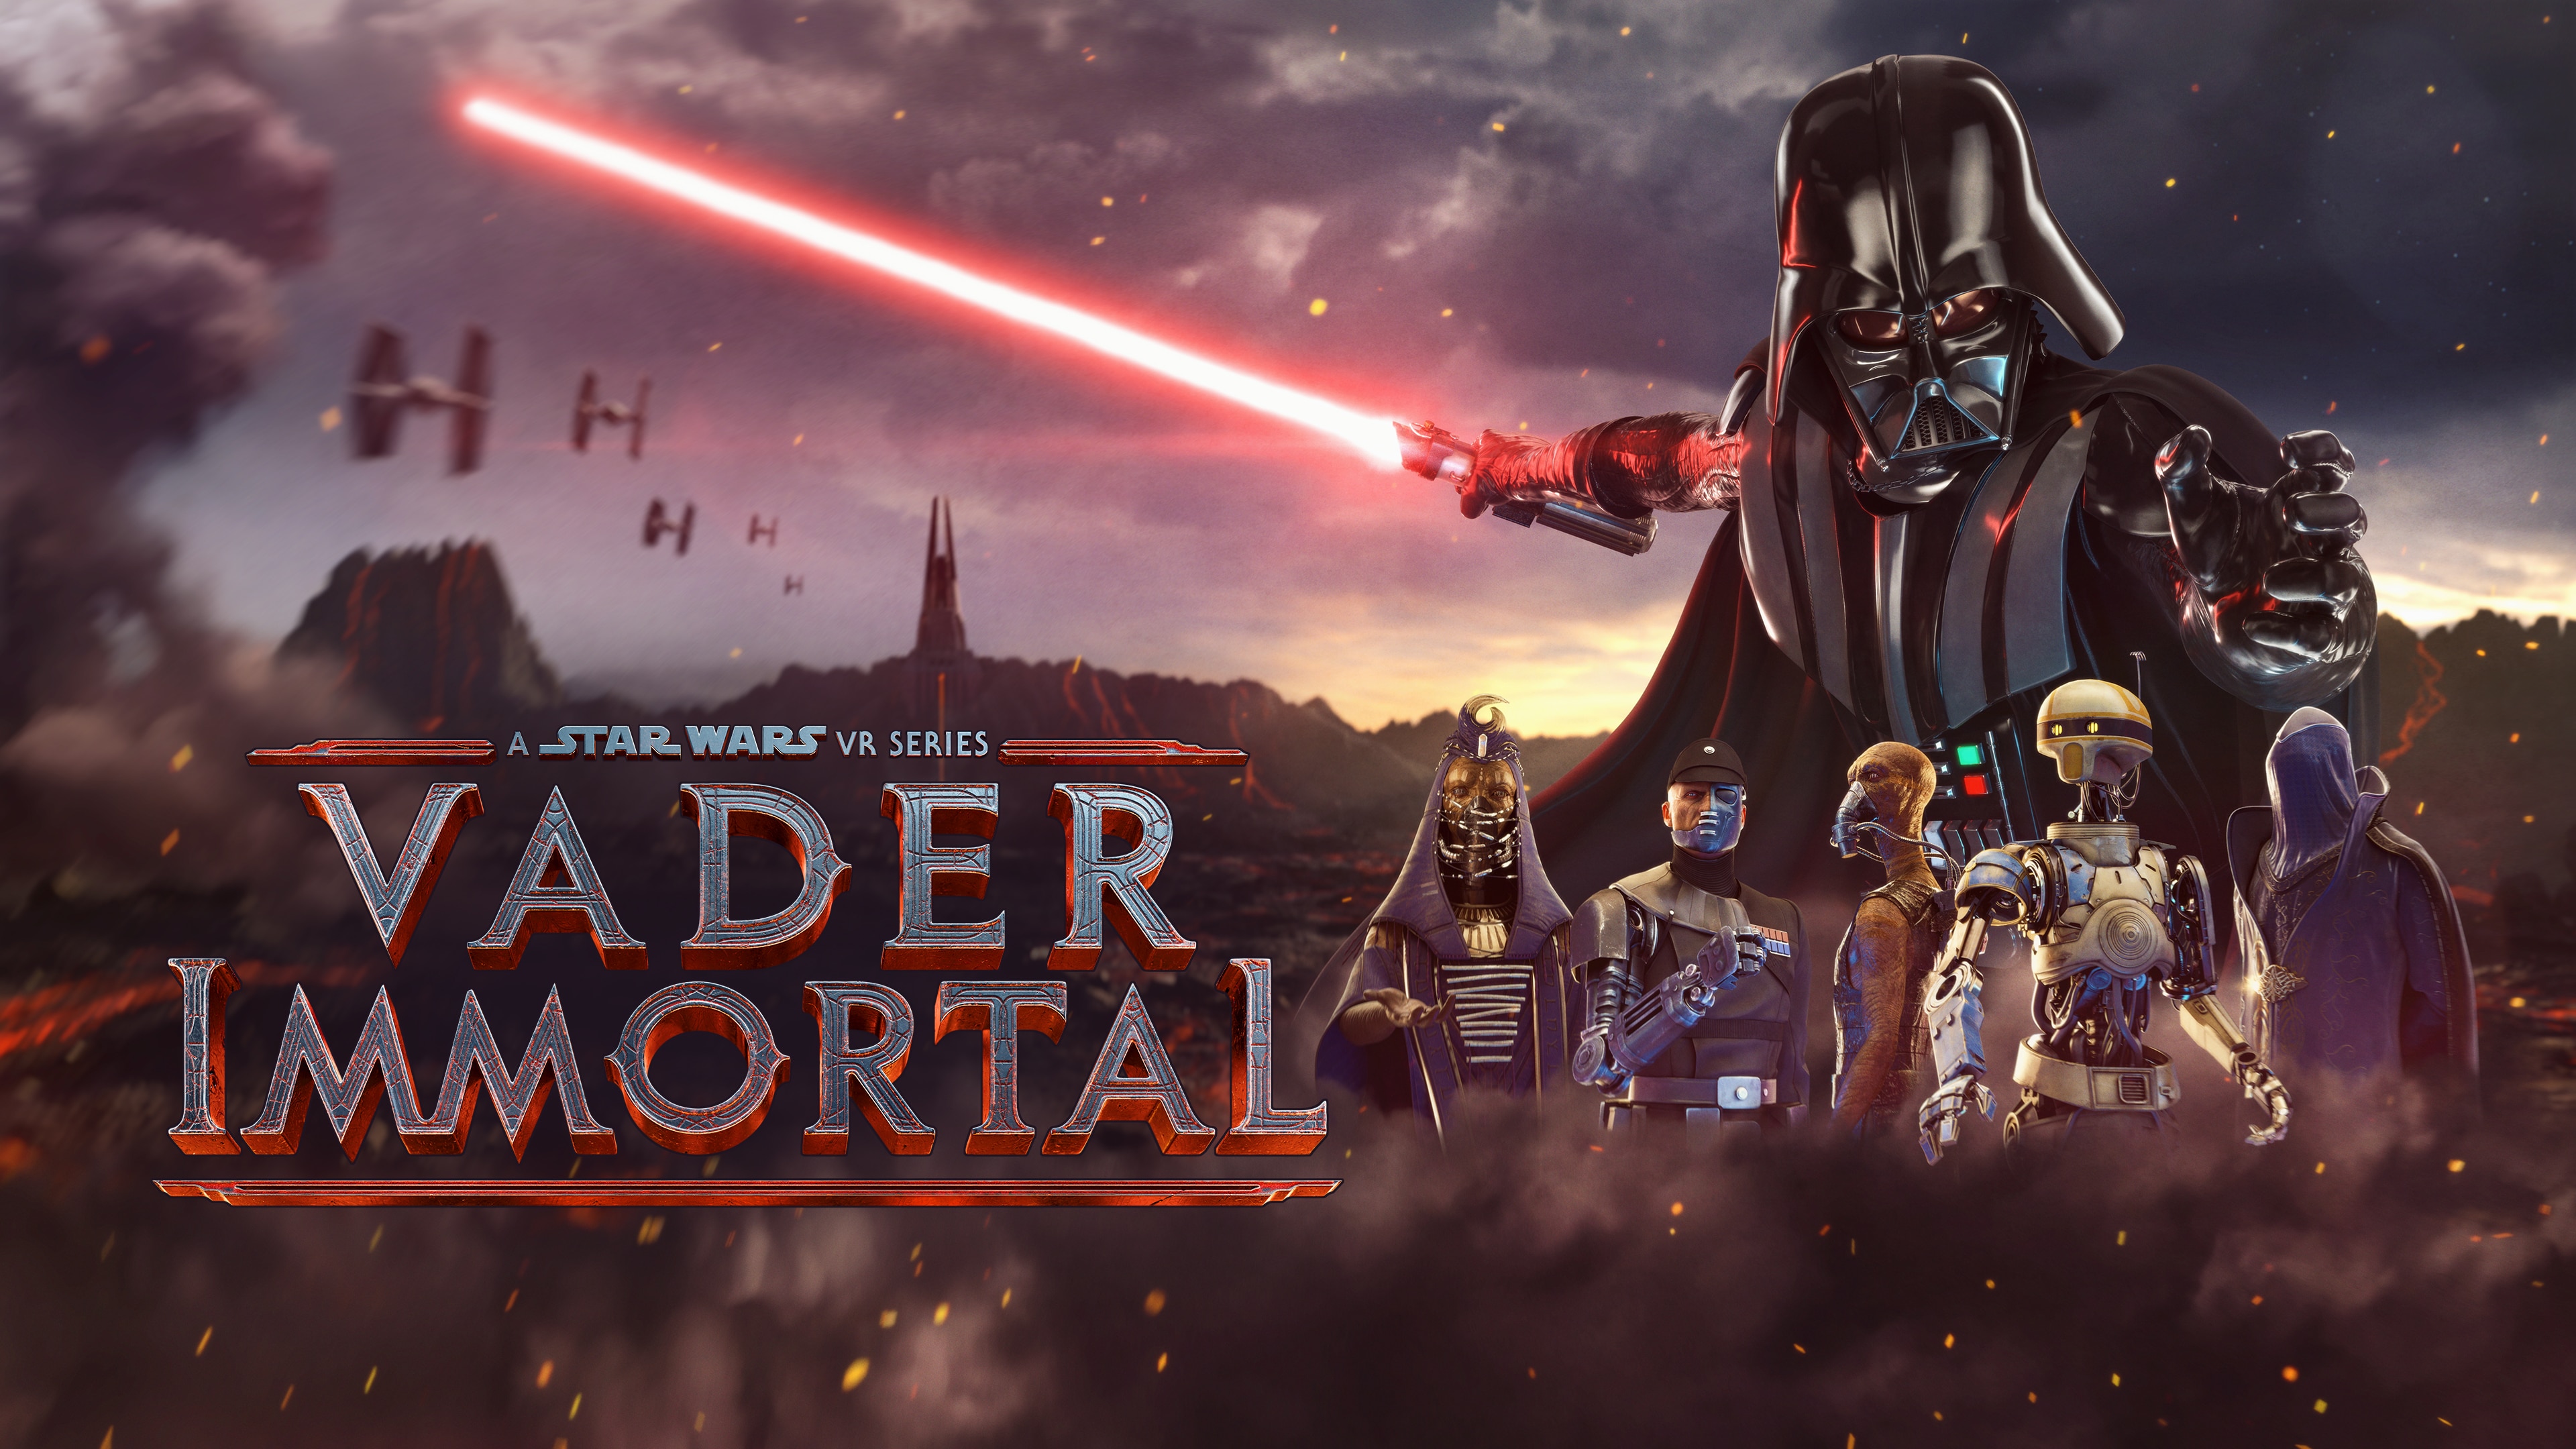 Vader Immortal: A Star Wars VR Series (PSVR) $14.99 on PSN